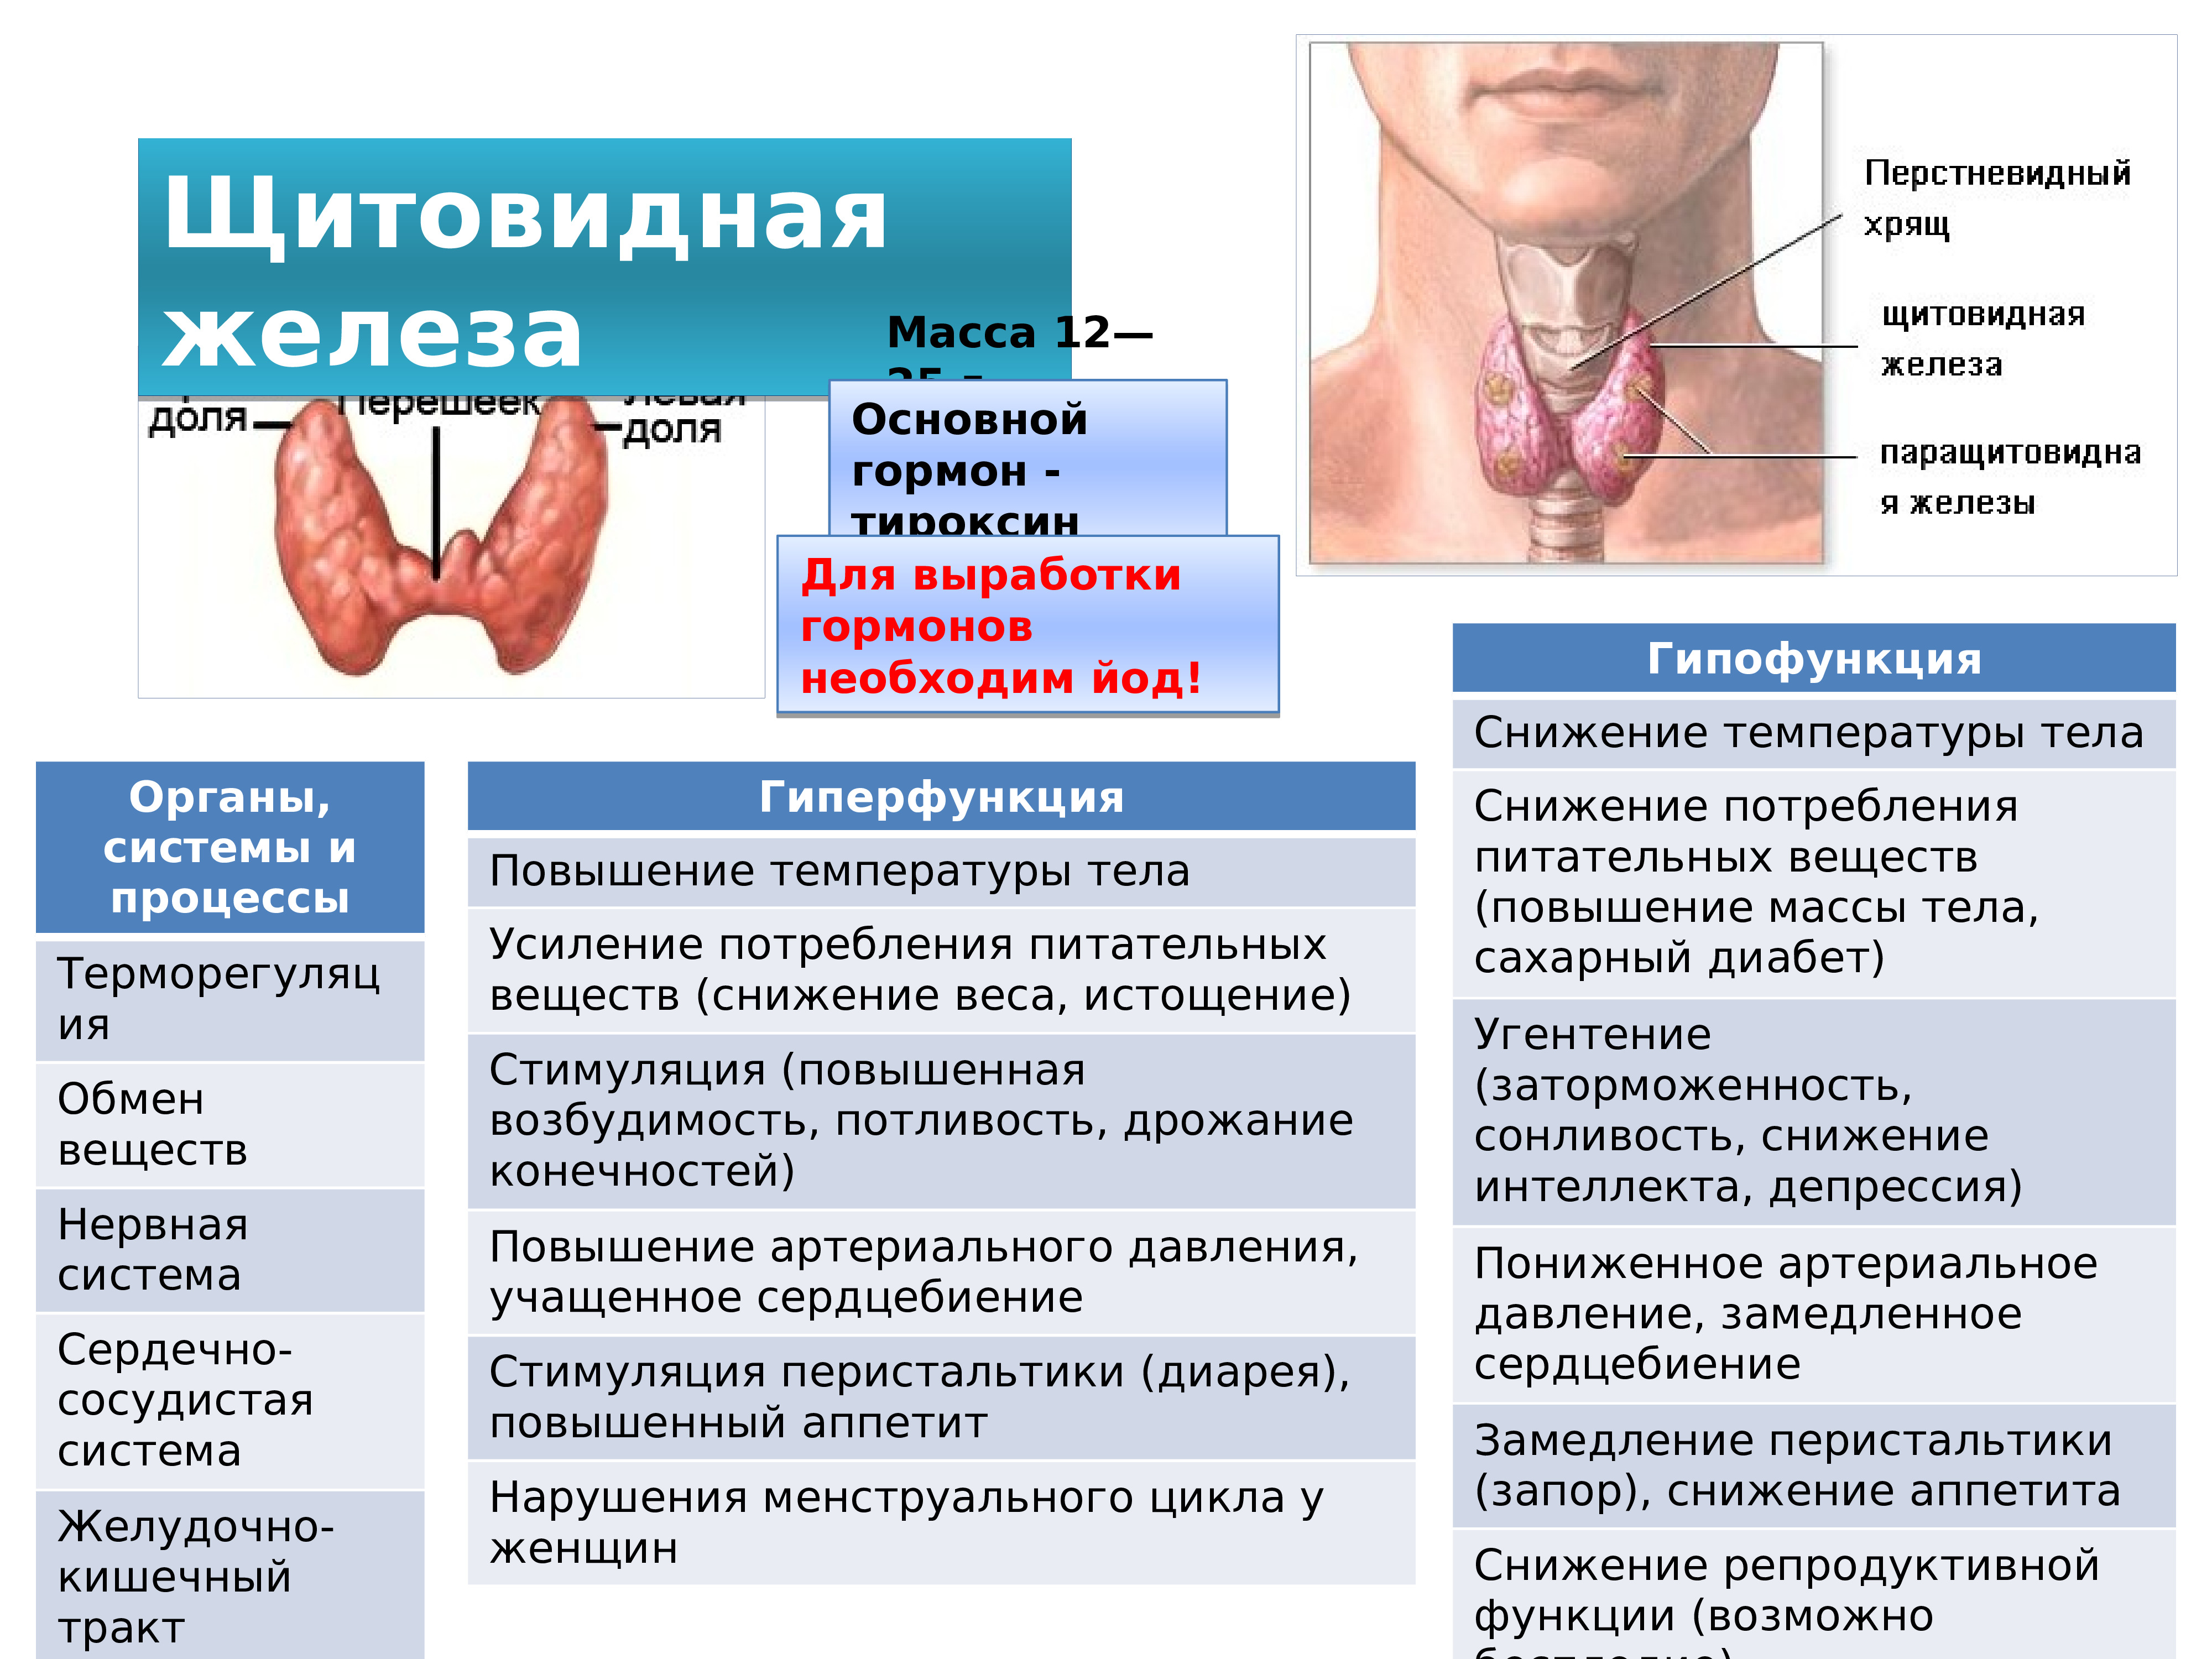 Какие железы вырабатывают тироксин. Гипофункция гормонов щитовидной железы. Щитовидная железа йод тироксин эндокринная система. Масса щитовидной железы. Щитовидная железа и сахарный диабет.